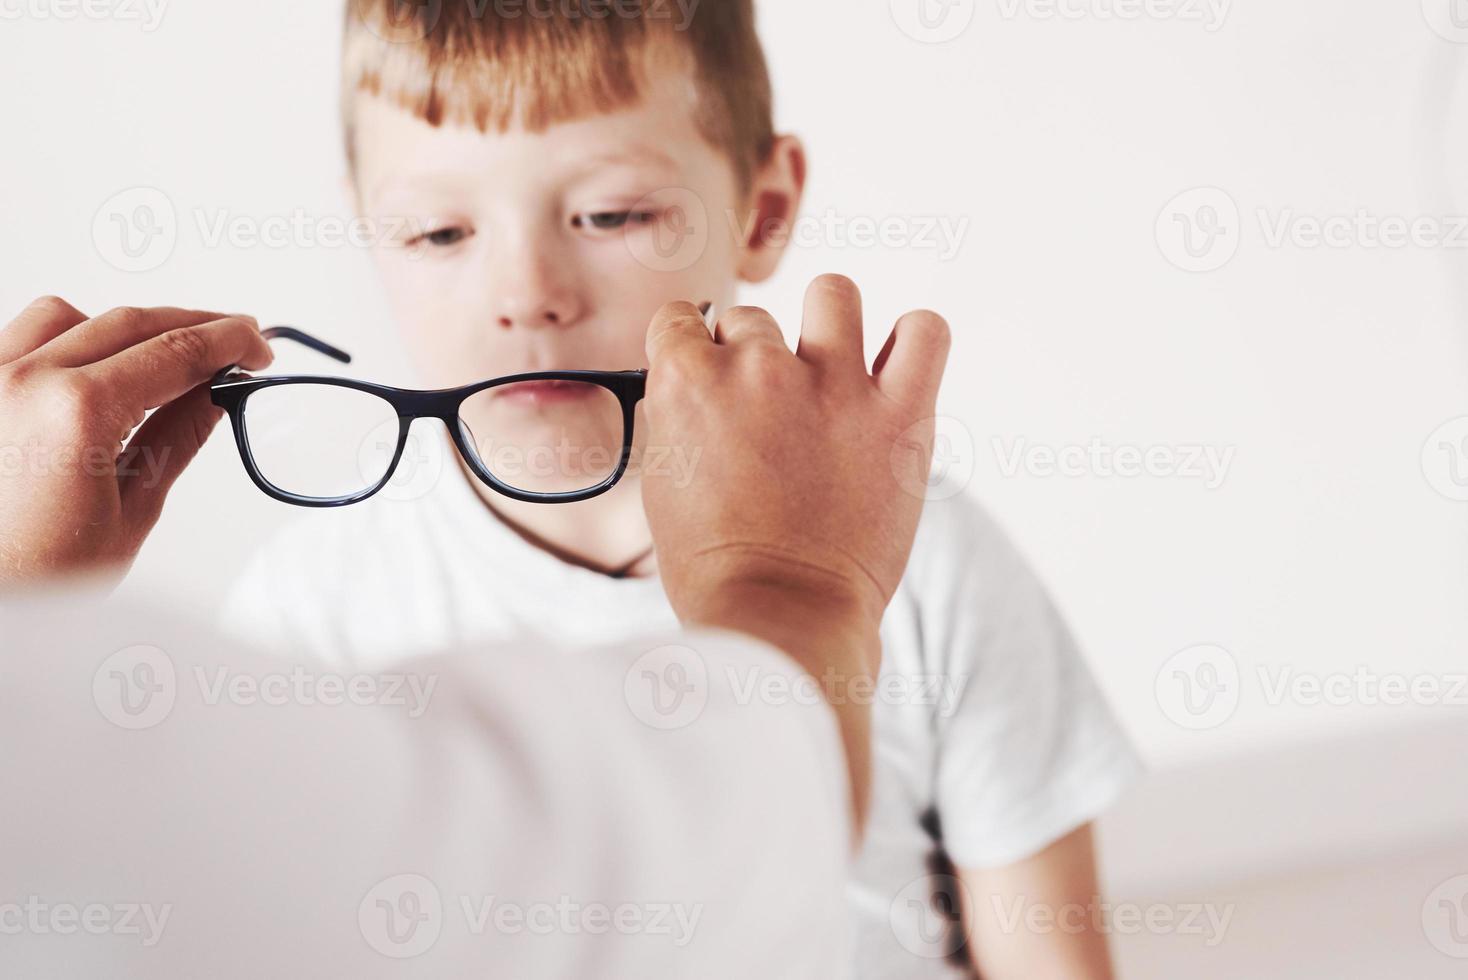 låt oss prova den här modellen. läkare som ger barnet nya svarta glasögon för sin syn foto